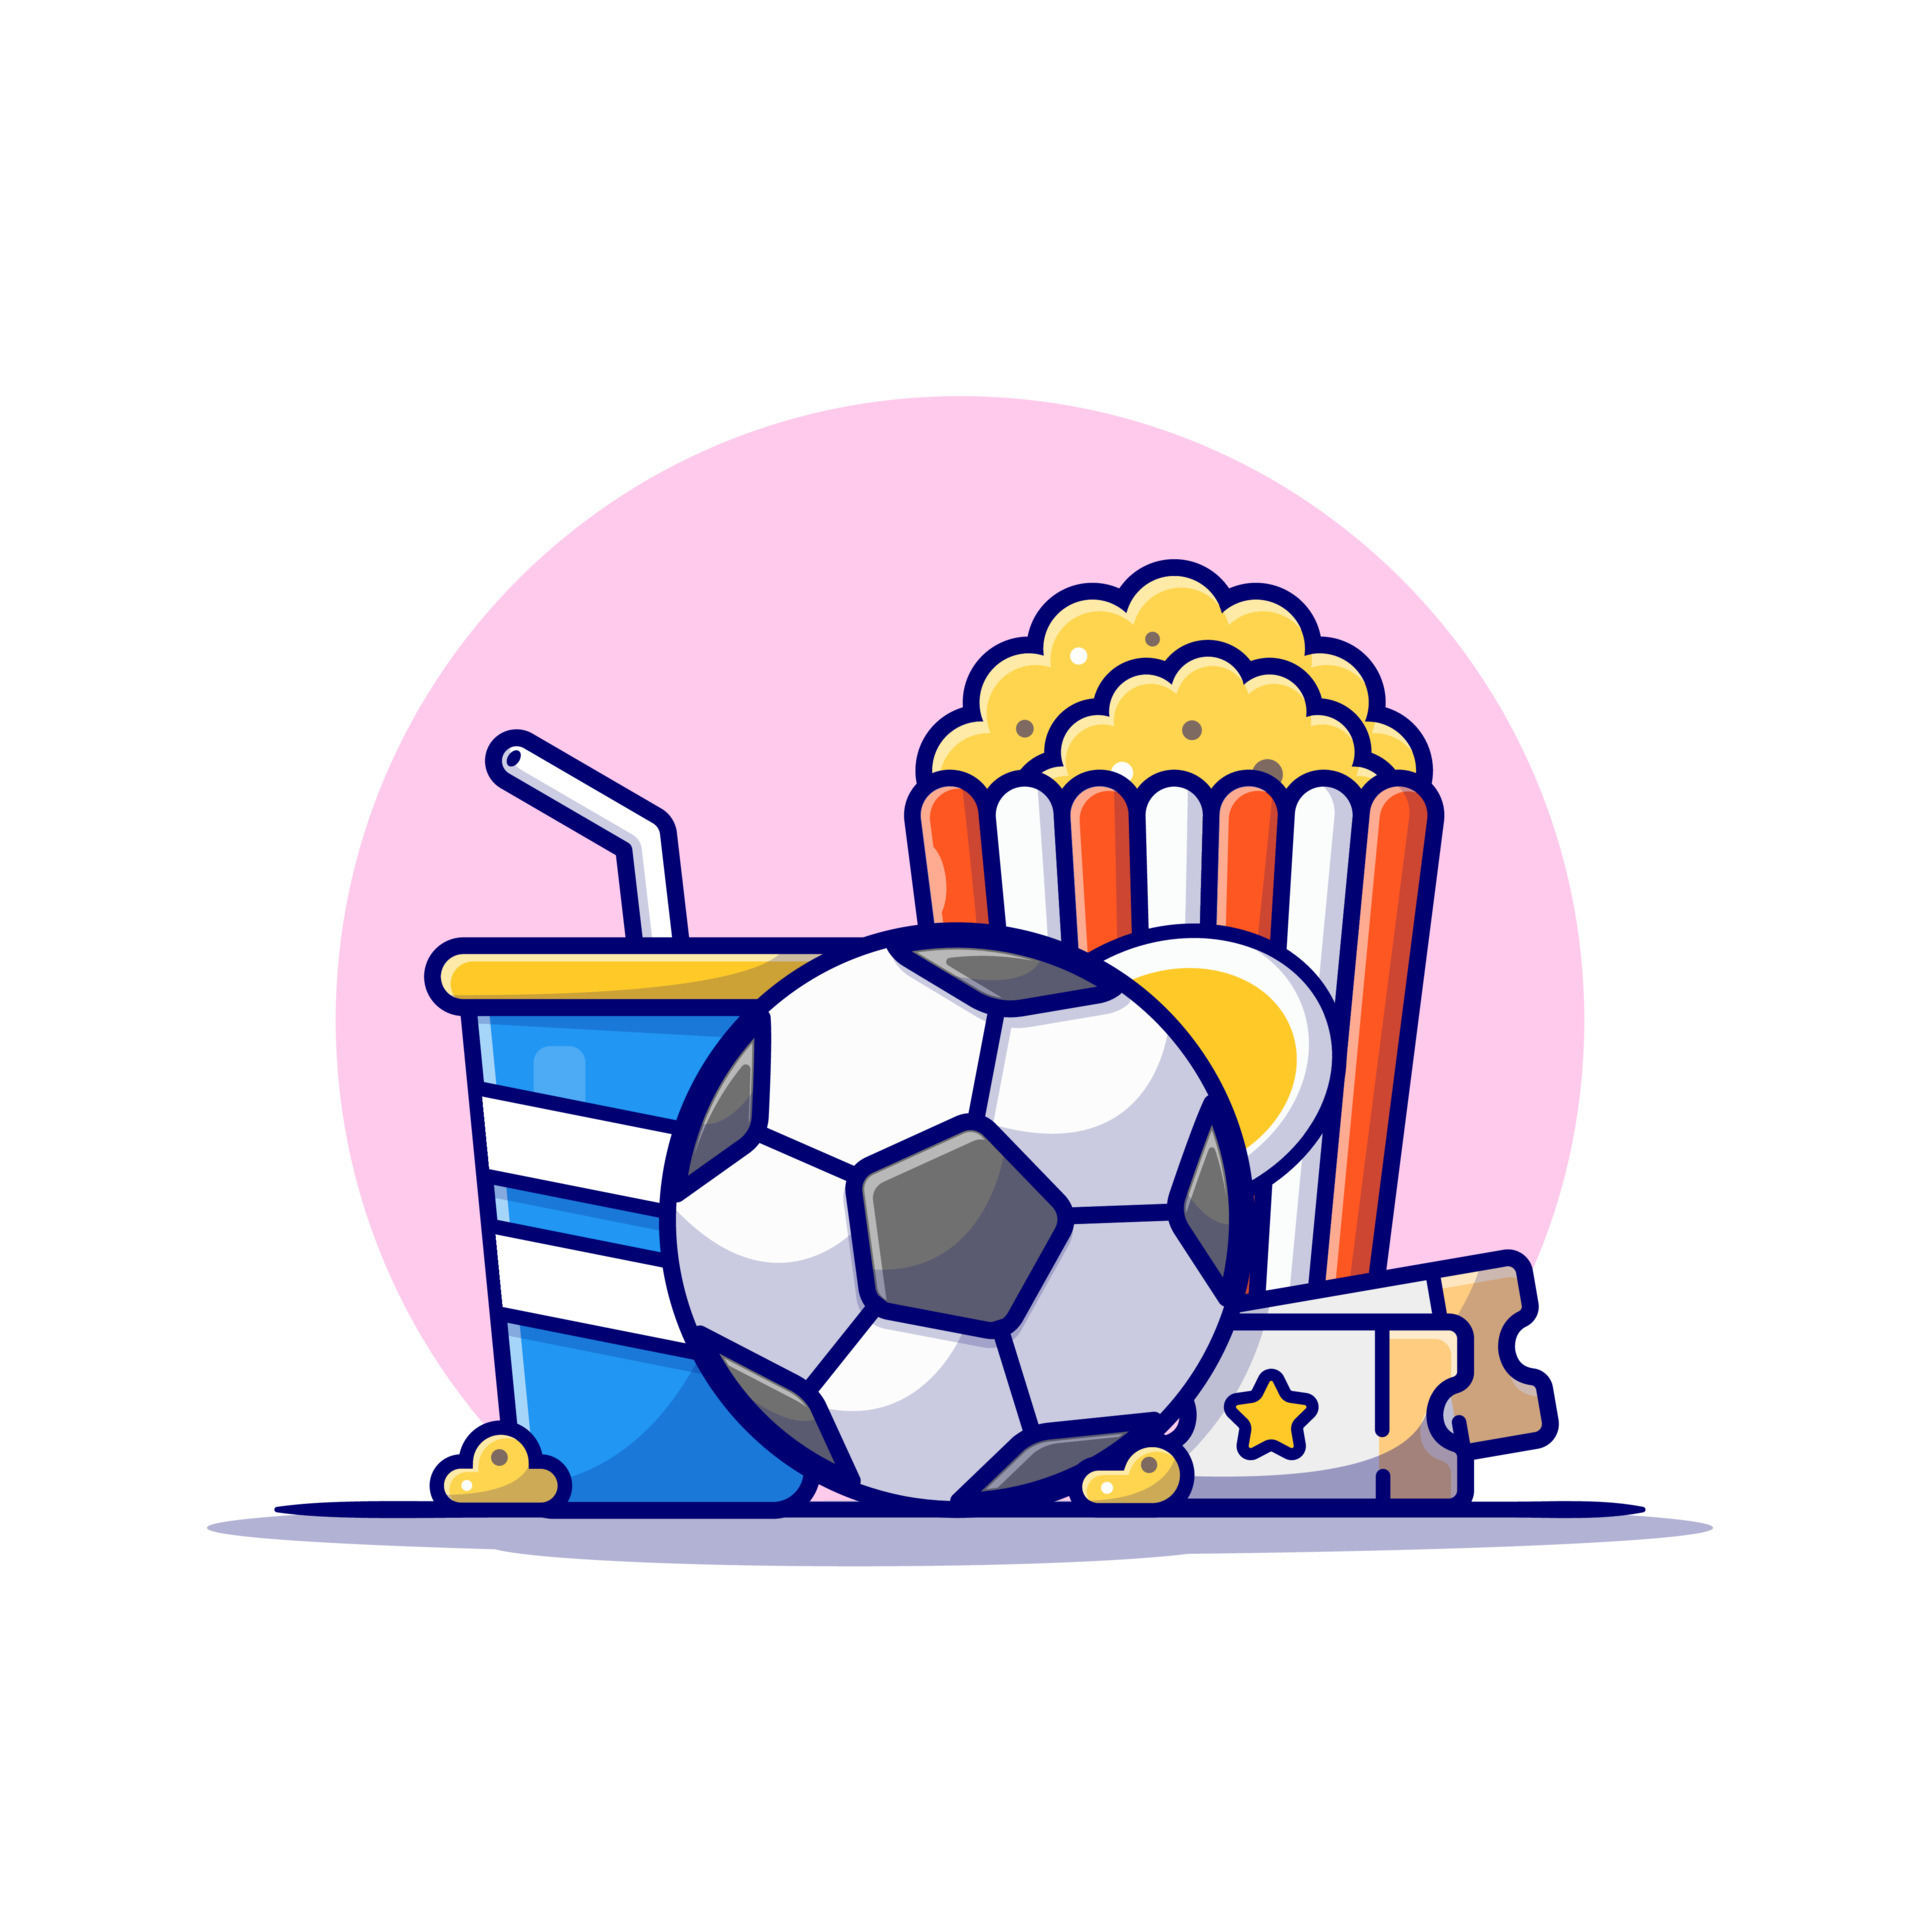 Estilo De Desenho Animado De ícone De Bola De Futebol PNG , Clipart De Bola  De Futebol, ícones De Estilo, ícones Dos Desenhos Animados Imagem PNG e  Vetor Para Download Gratuito